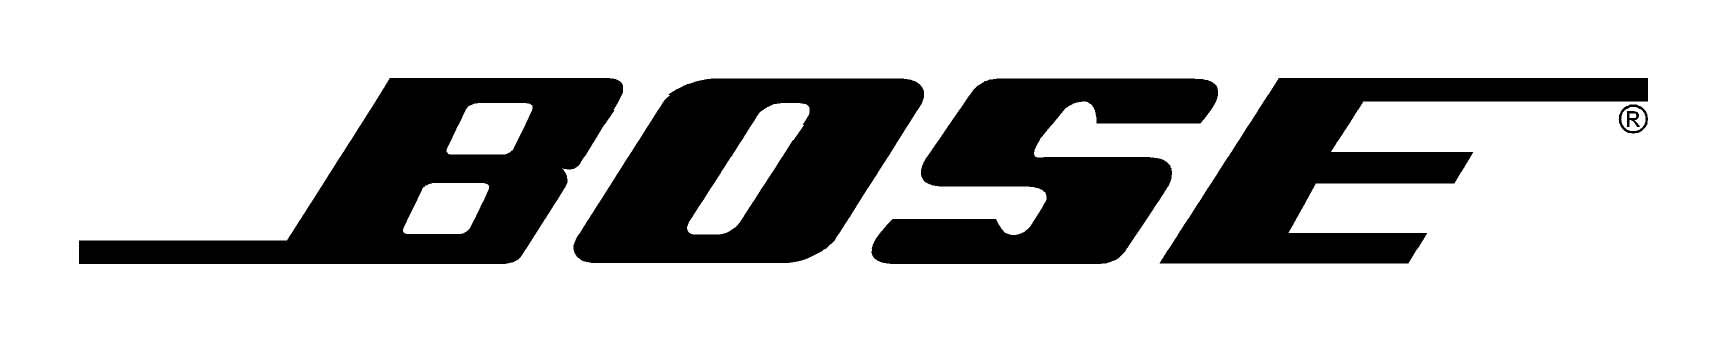 logotipo de bpse en blanco y negro